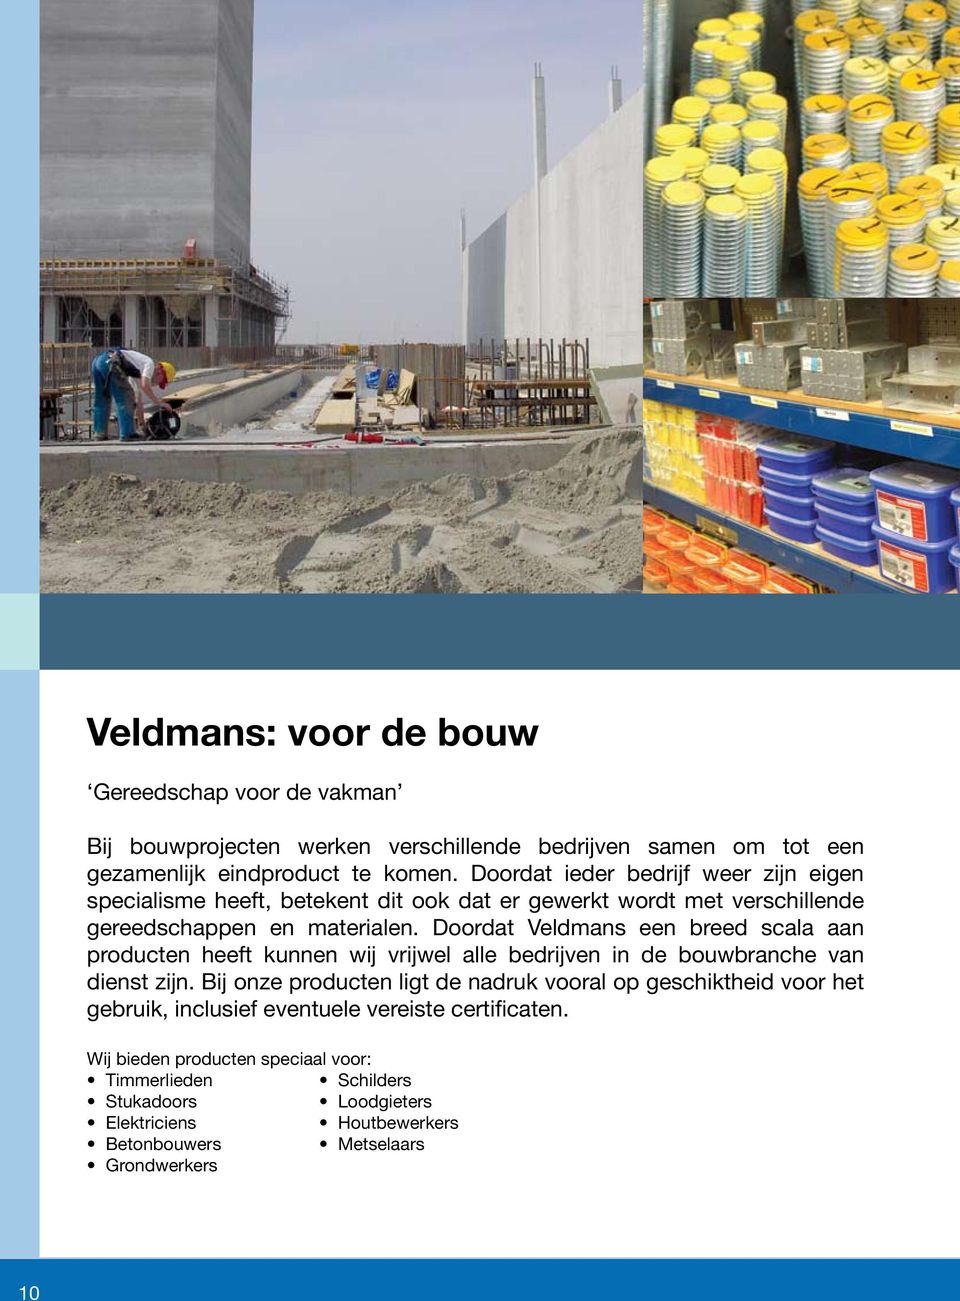 Doordat Veldmans een breed scala aan producten heeft kunnen wij vrijwel alle bedrijven in de bouwbranche van dienst zijn.